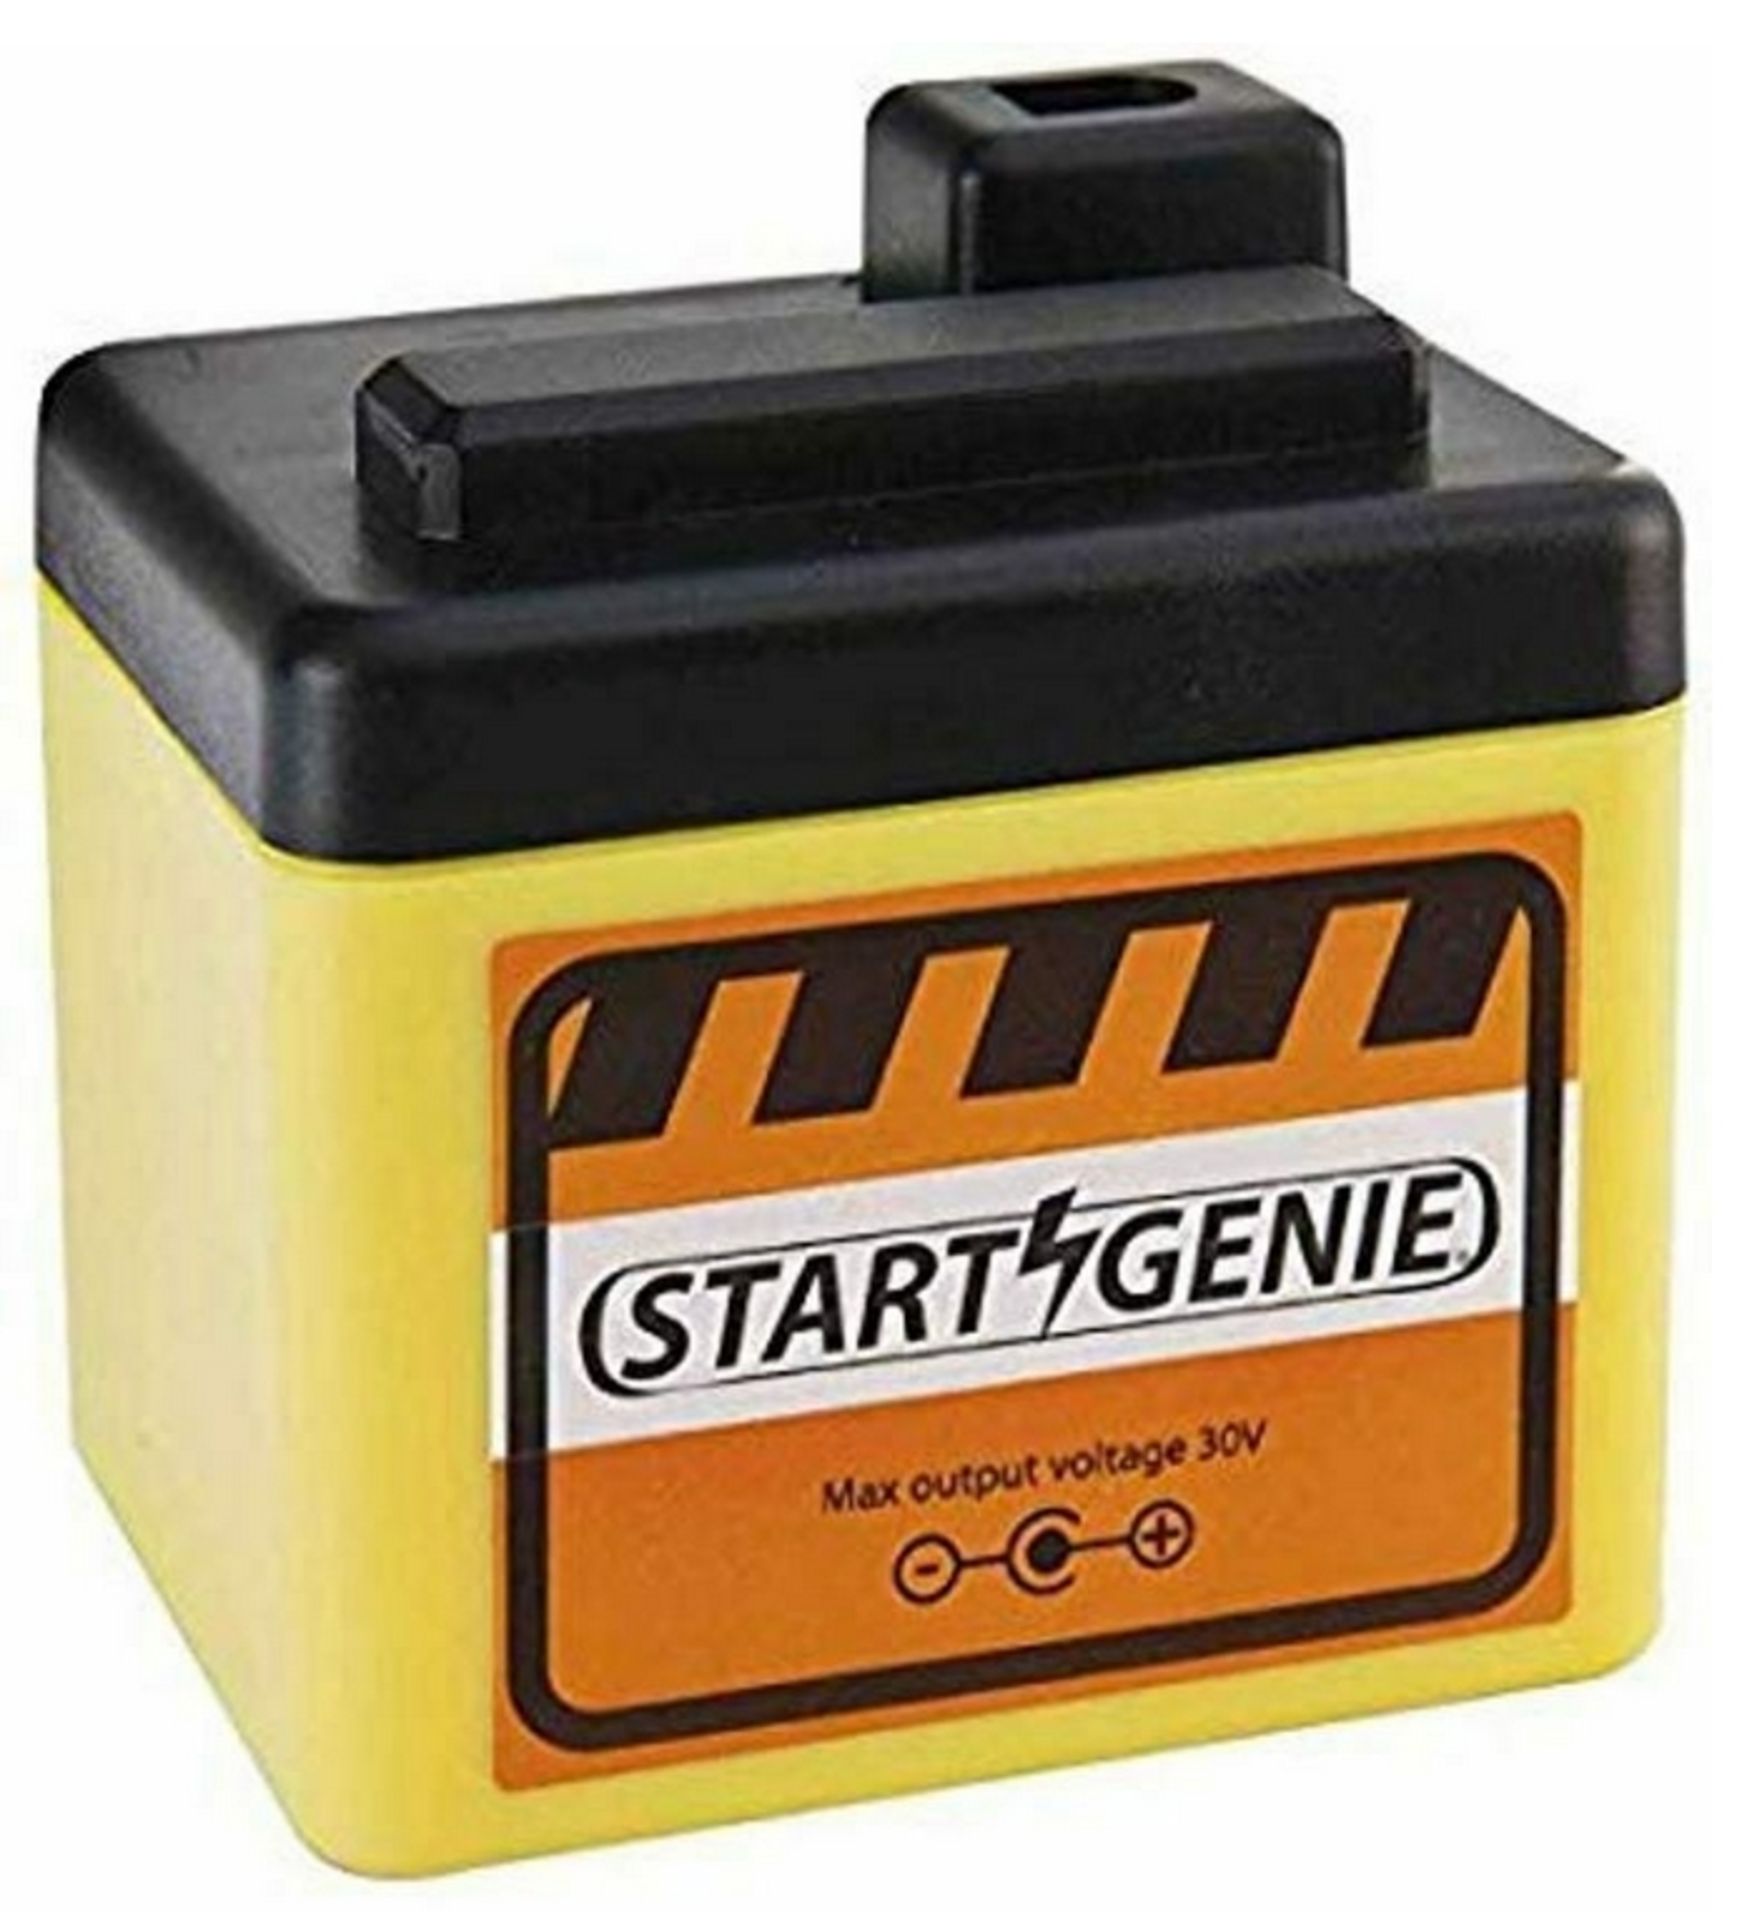 3 x start genie 12v power packs car engine starter jump start battery